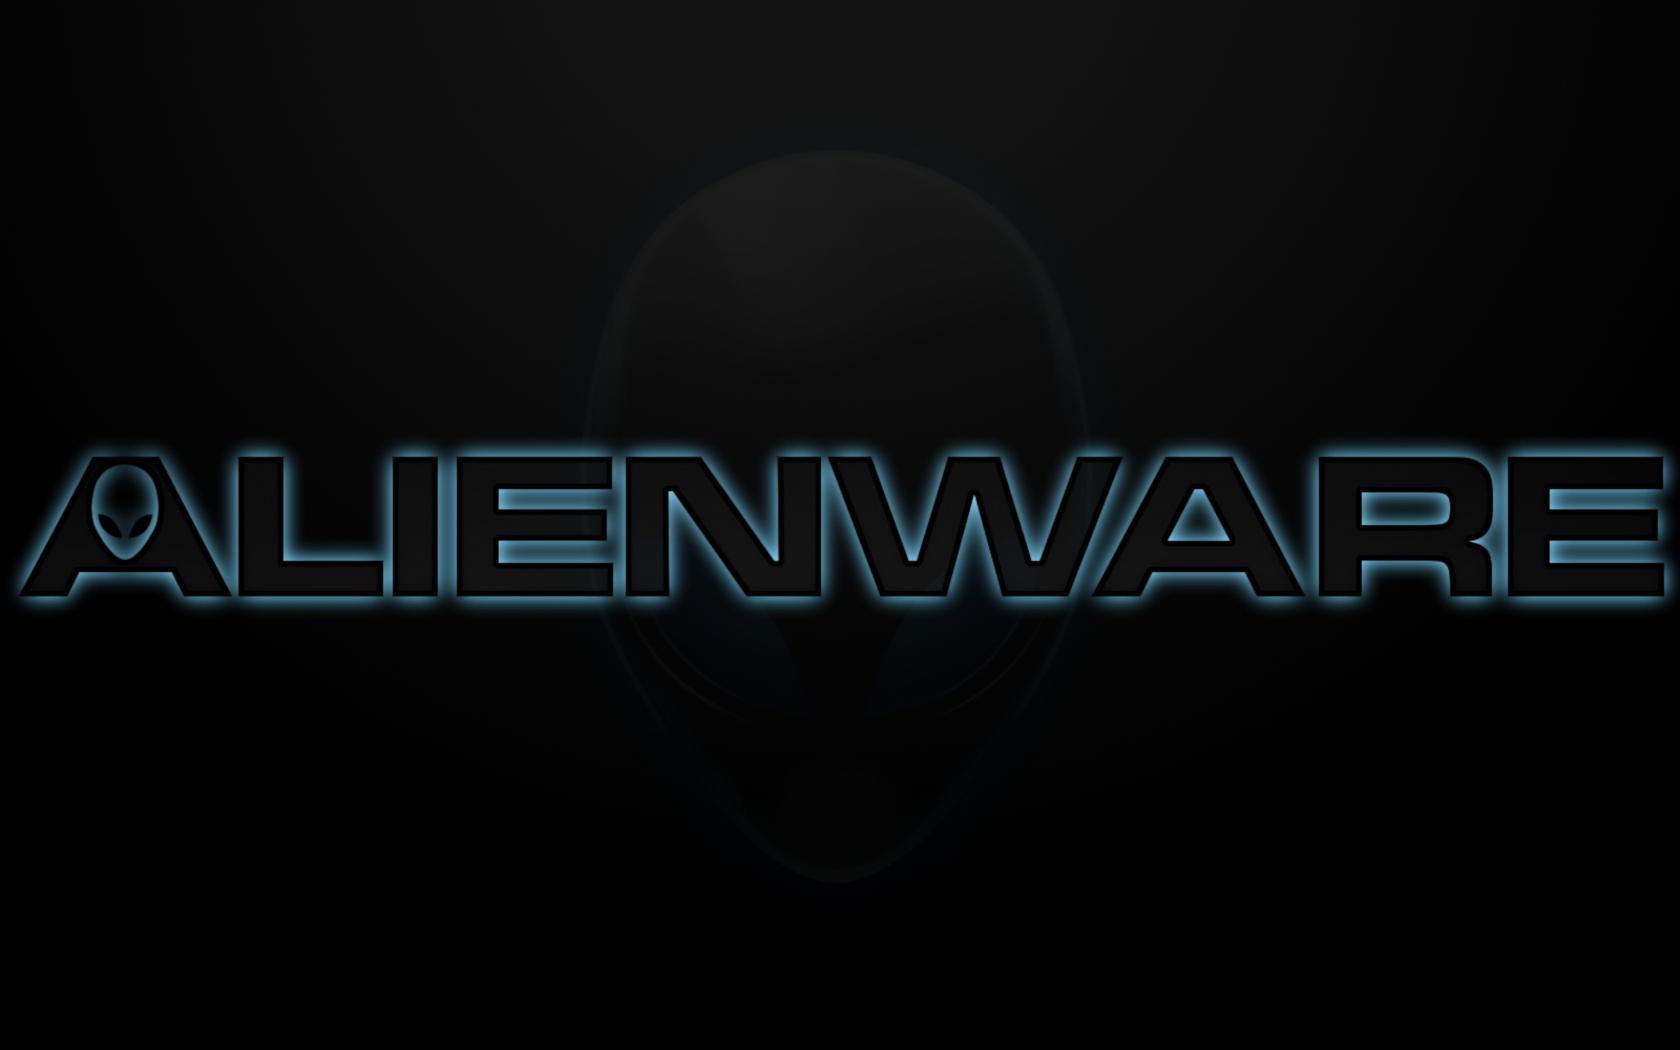 Alienware Wallpaper Pack